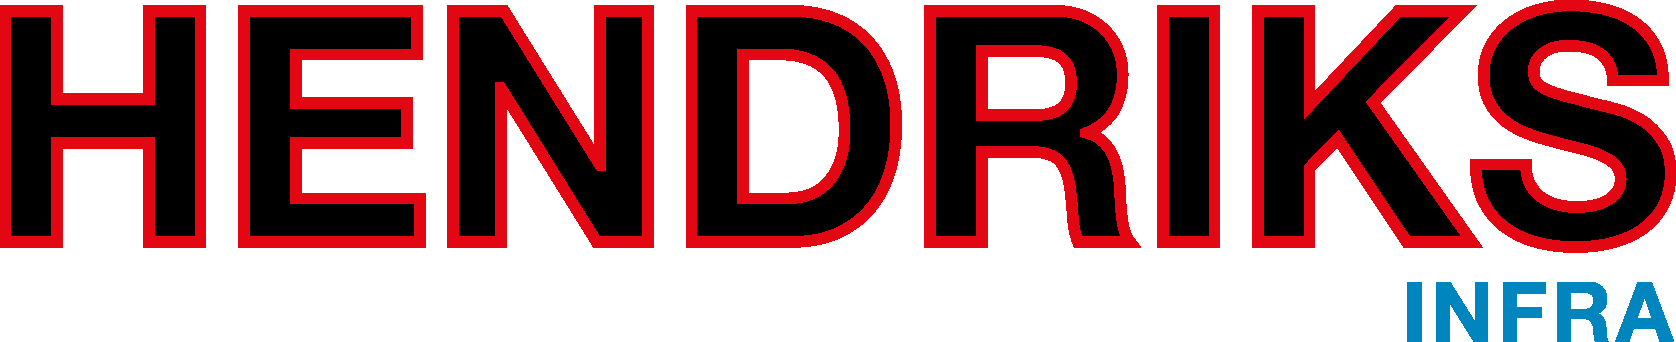 logo hendriks-infra